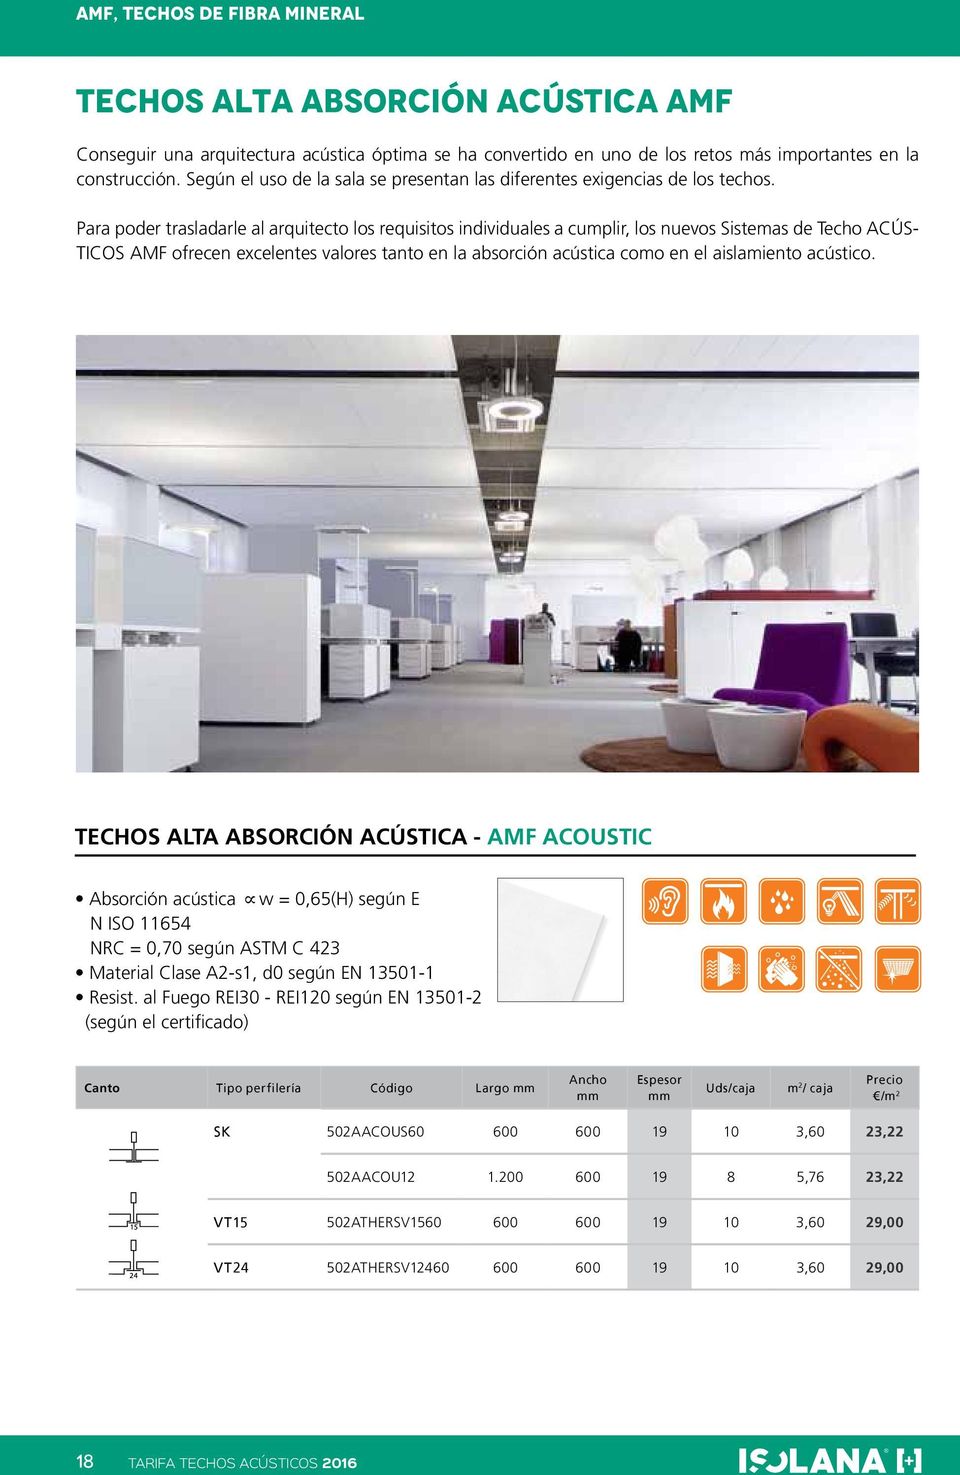 Para poder trasladarle al arquitecto los requisitos individuales a cumplir, los nuevos Sistemas de Techo ACÚS- TICOS AMF ofrecen excelentes valores tanto en la absorción acústica como en el